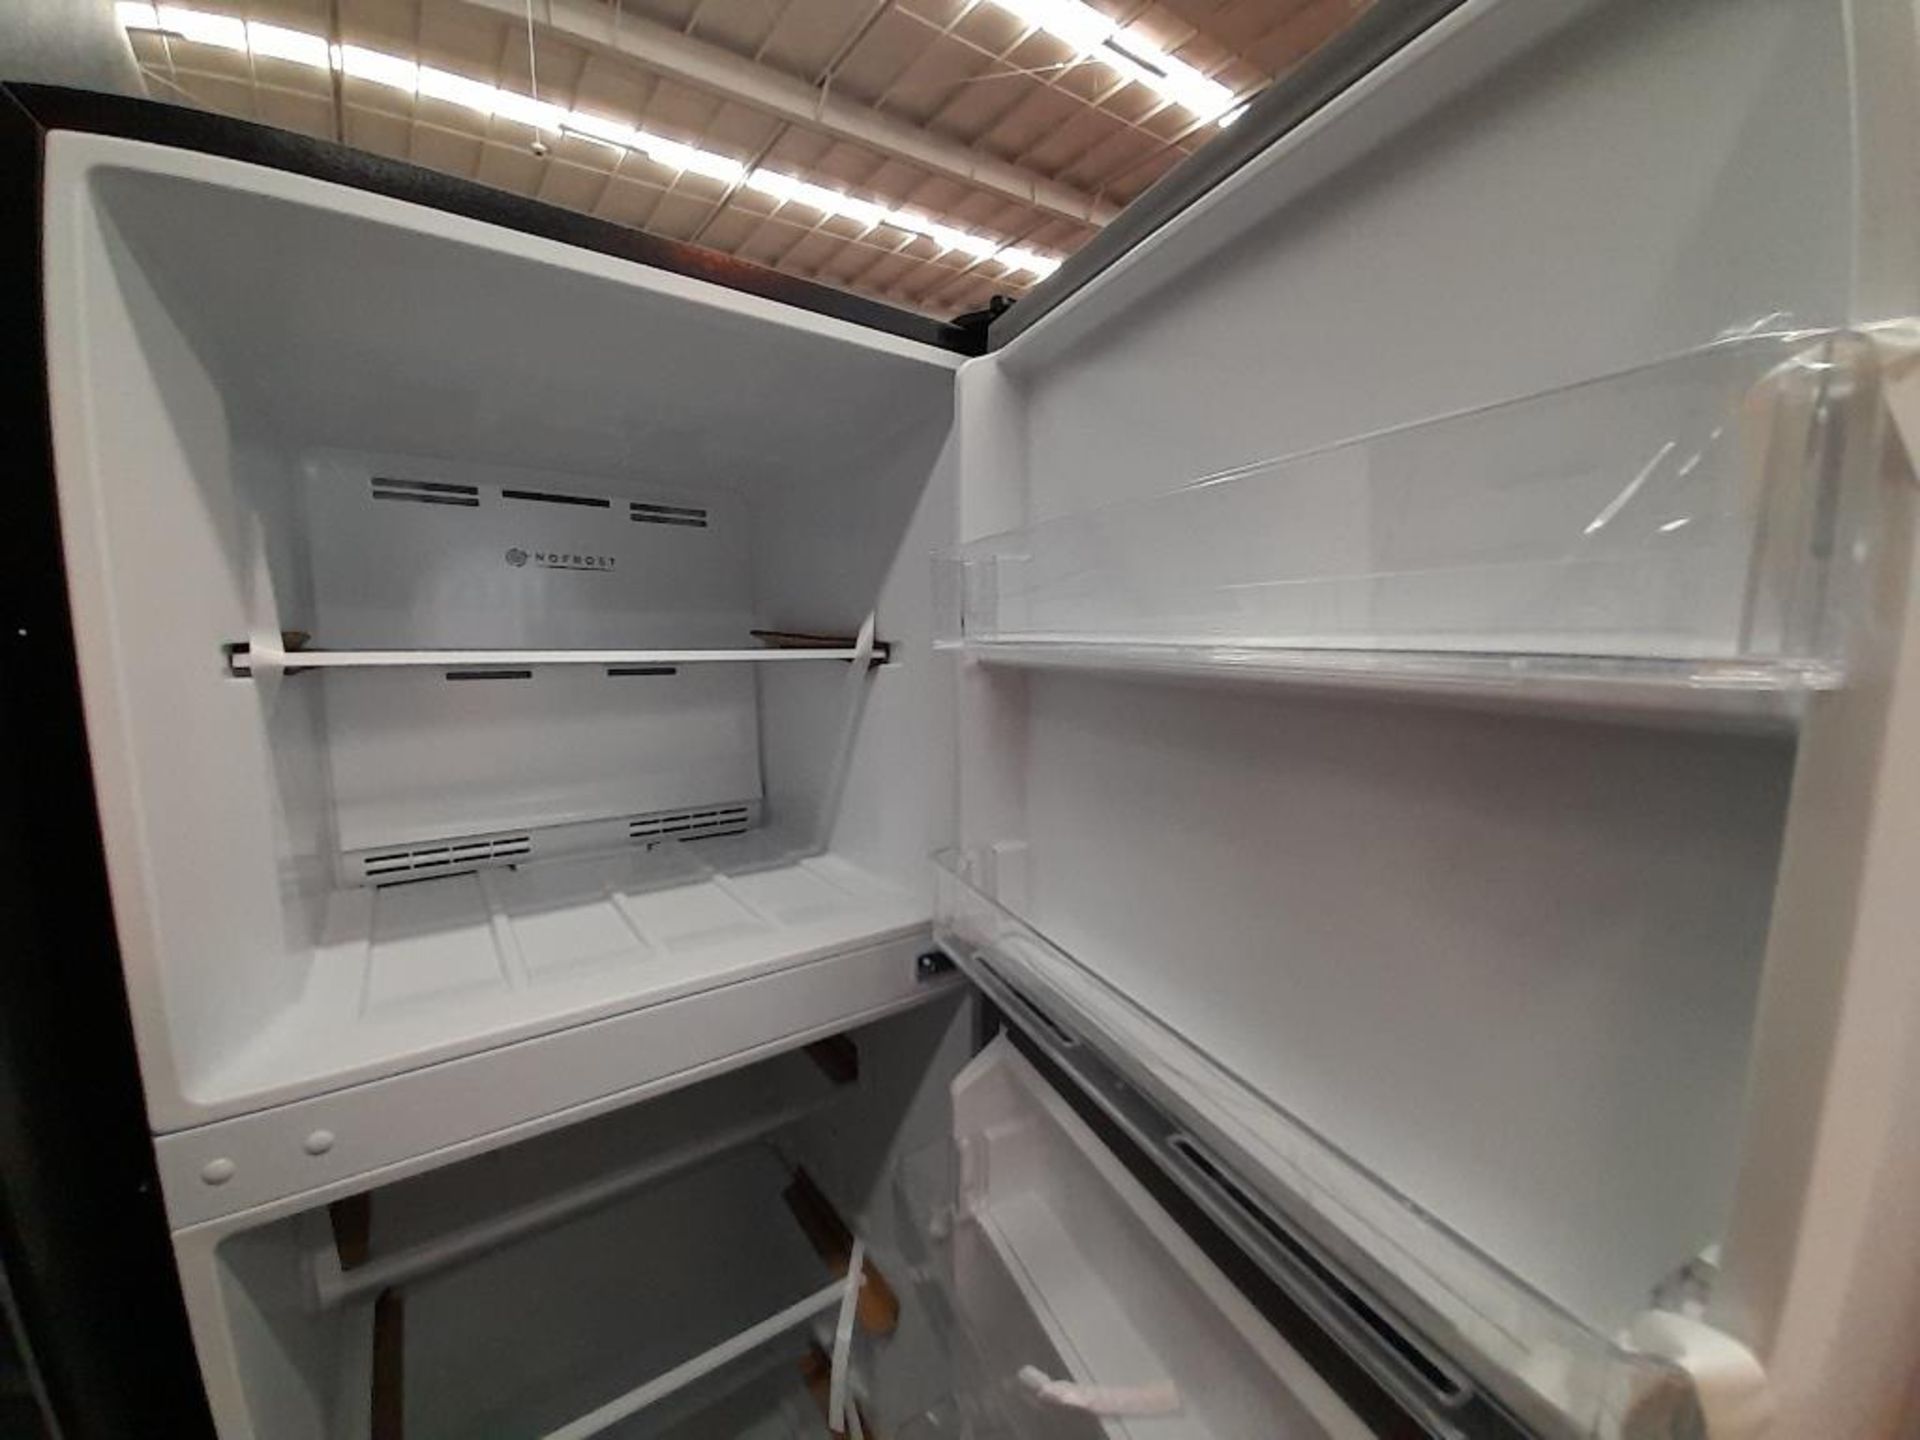 Lote de 2 refrigeradores contiene: 1 Refrigerador Marca MABE, Modelo IRMA250PV, Serie ND, Color GRI - Image 4 of 8